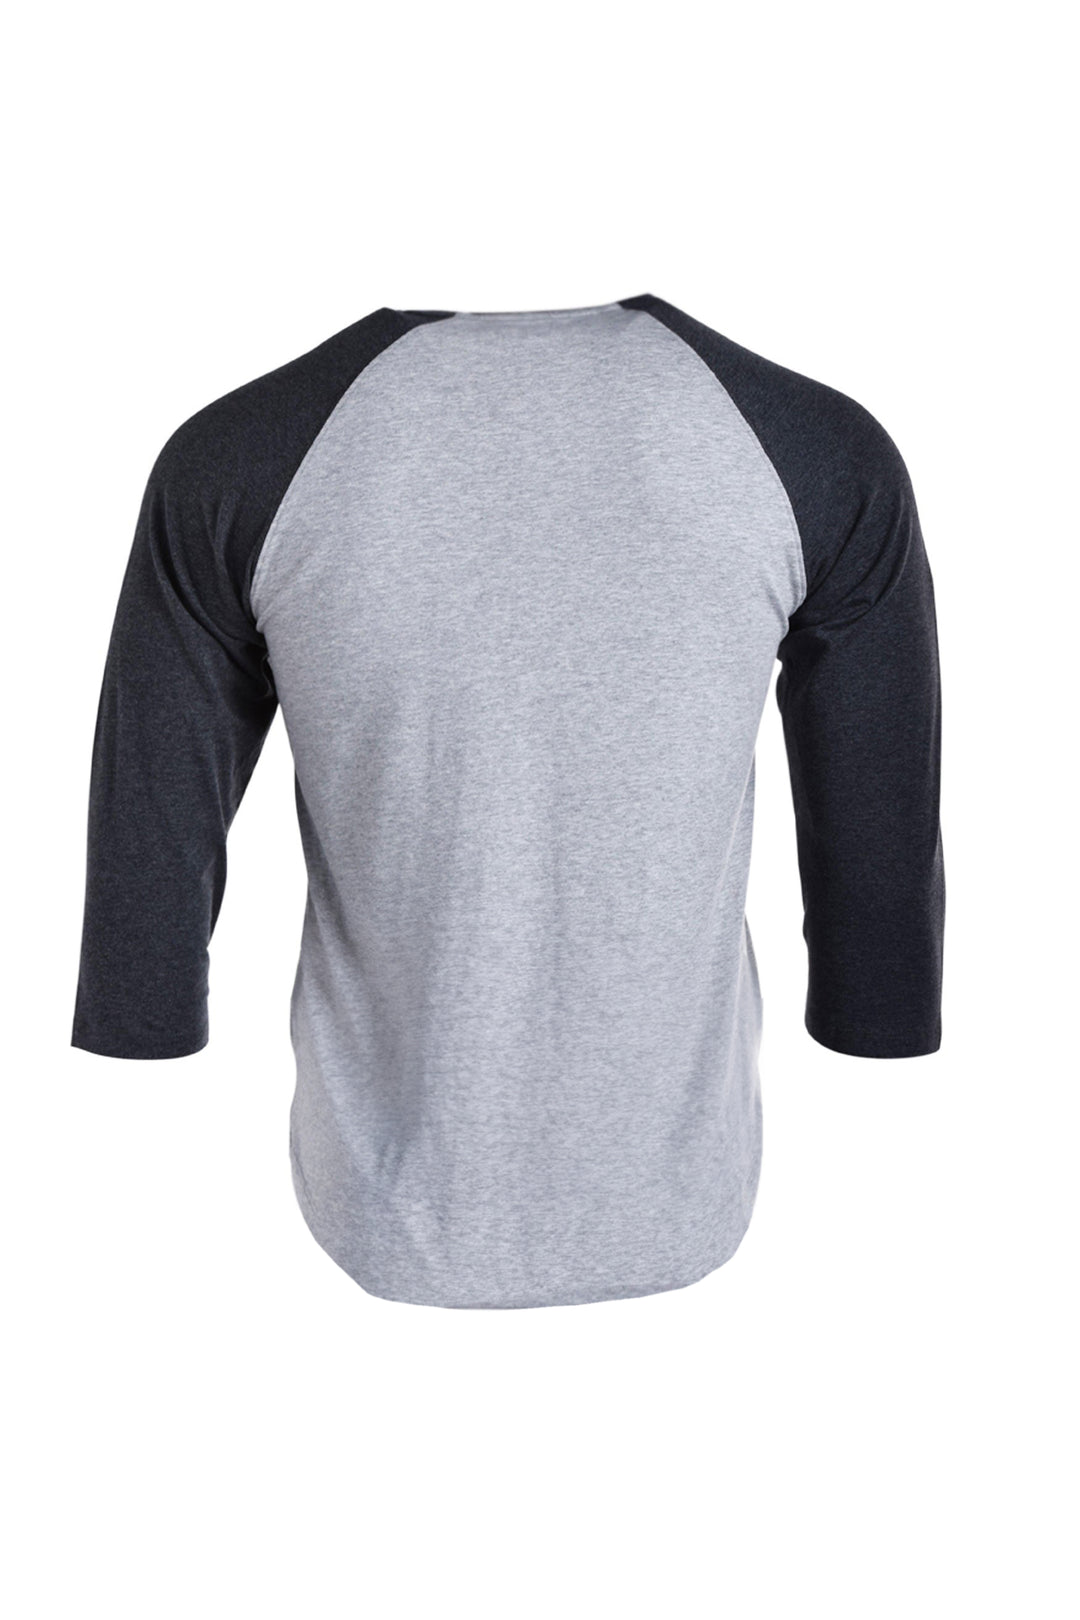 Ultra Comfy 3/4 Sleeve Shirt [Man] [Enjoy it]